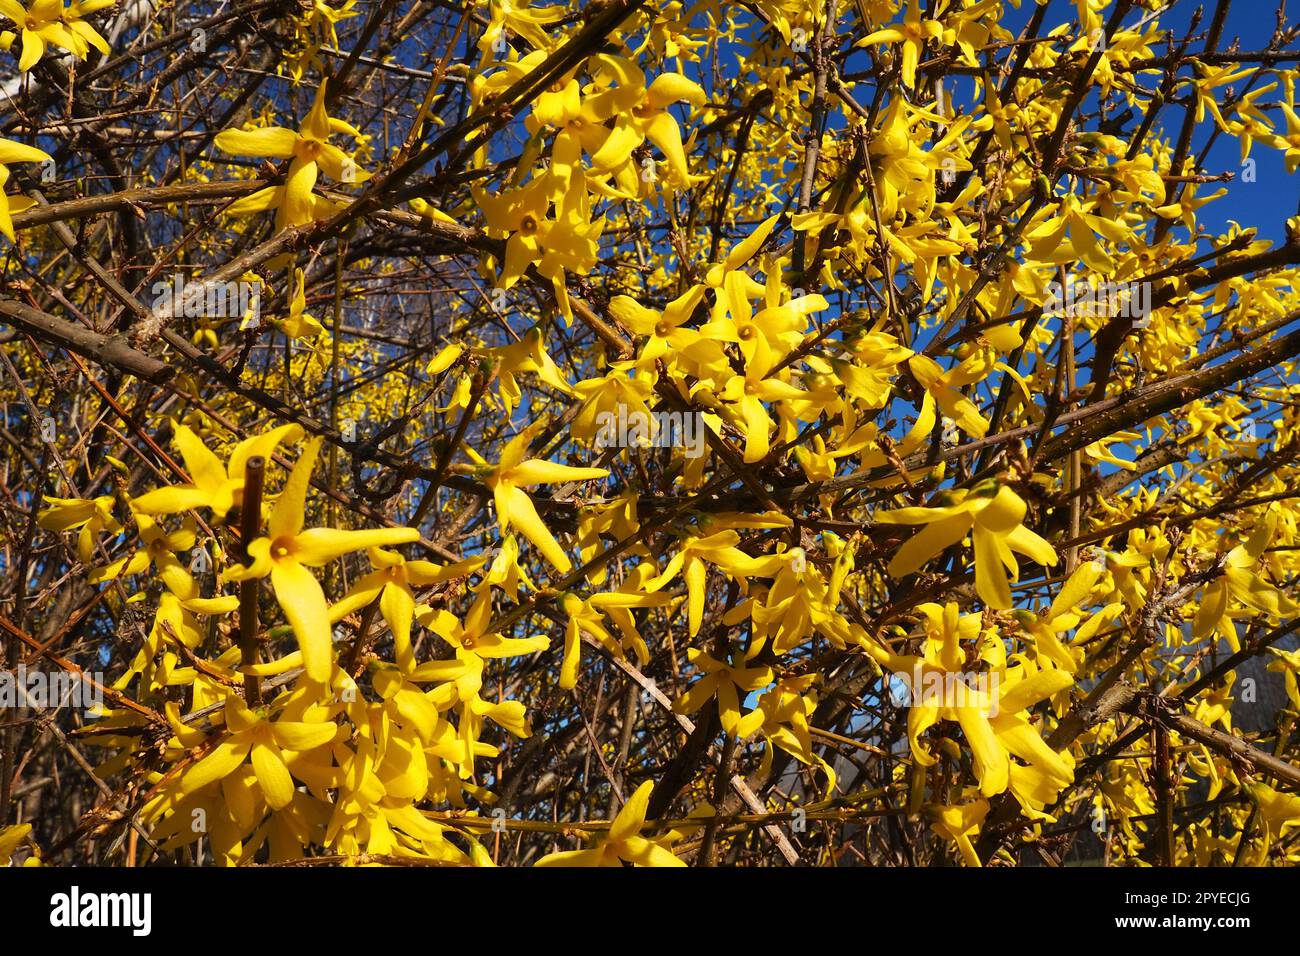 Forsythia est un genre d'arbustes et de petits arbres de la famille des oliviers. Nombreuses fleurs jaunes sur les branches et les pousses. Classe des dicotylédones ordre des Lamiaceae famille des olives Genus Forsythia Banque D'Images